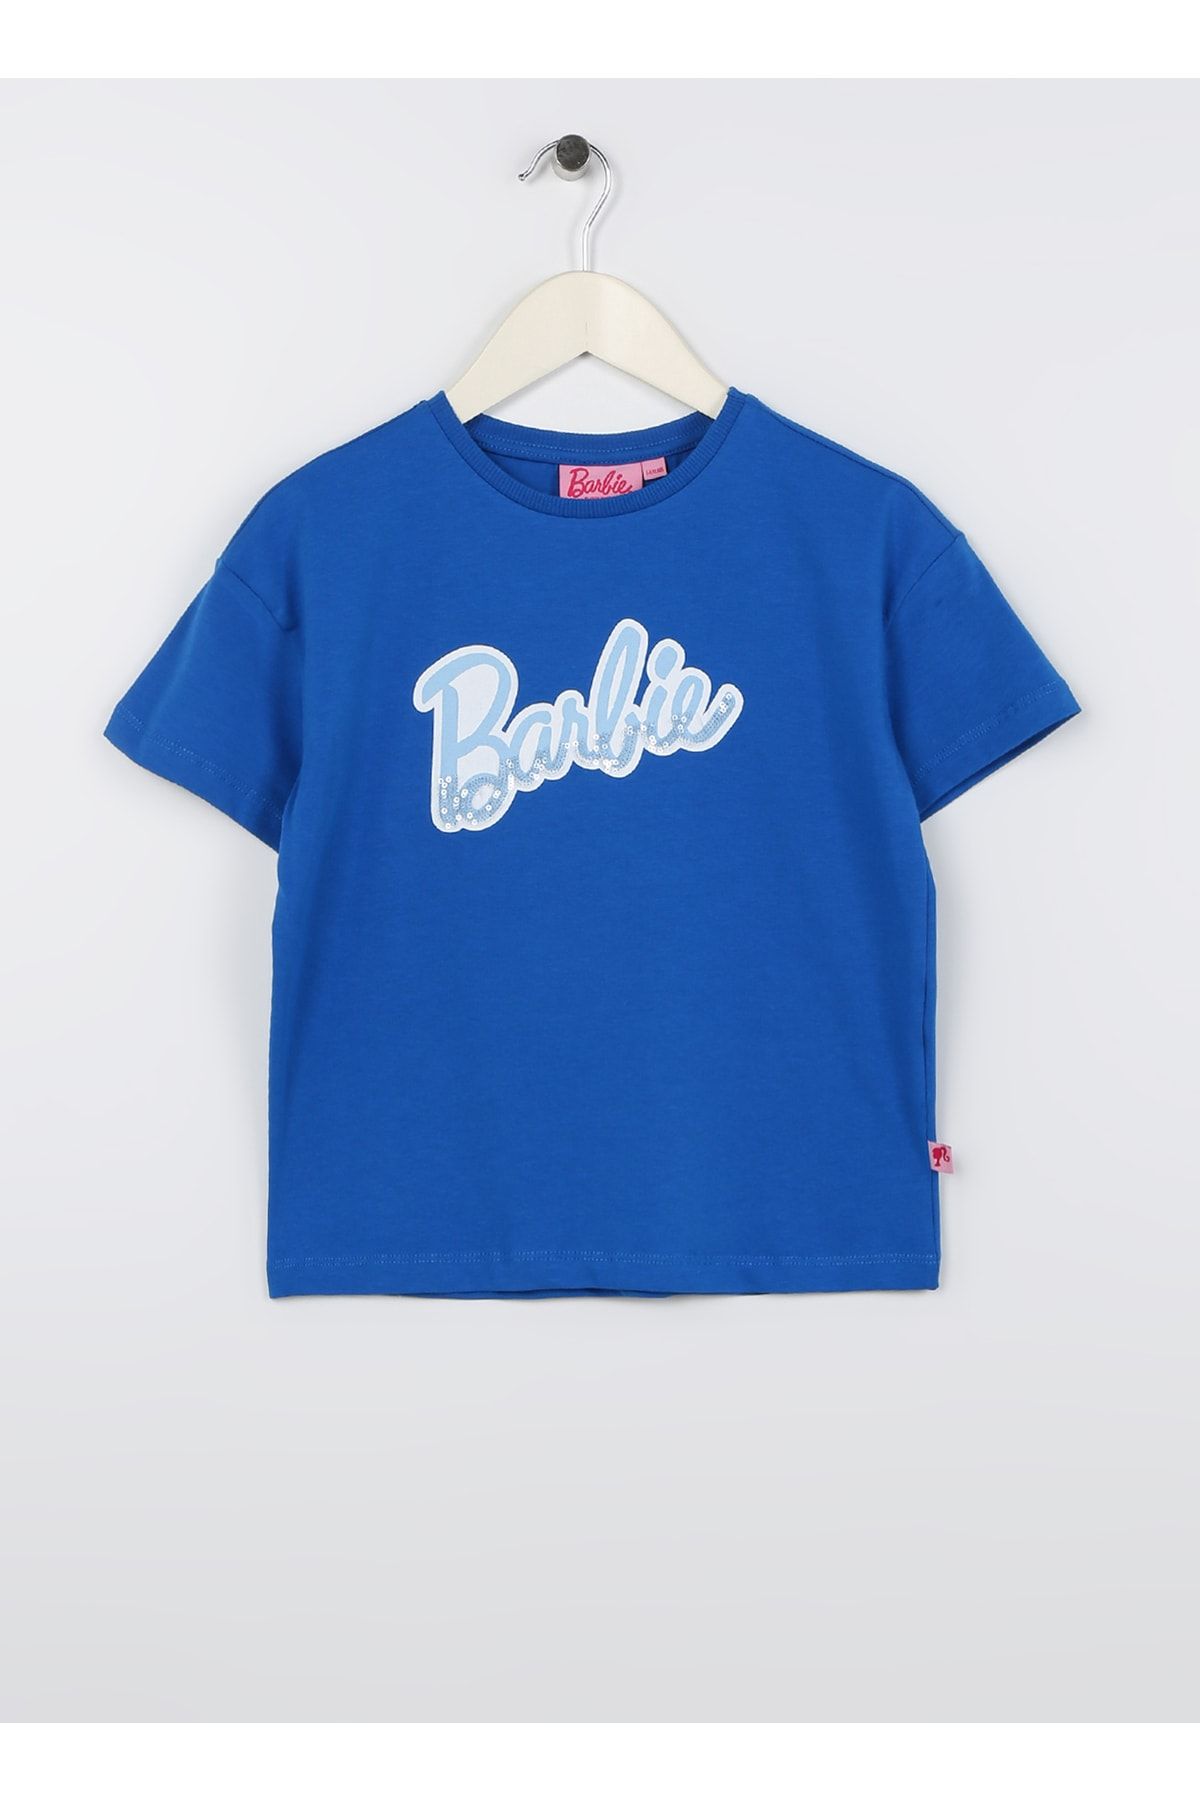 Barbie Baskılı Saks Kız Çocuk T-shirt 23ssb-80